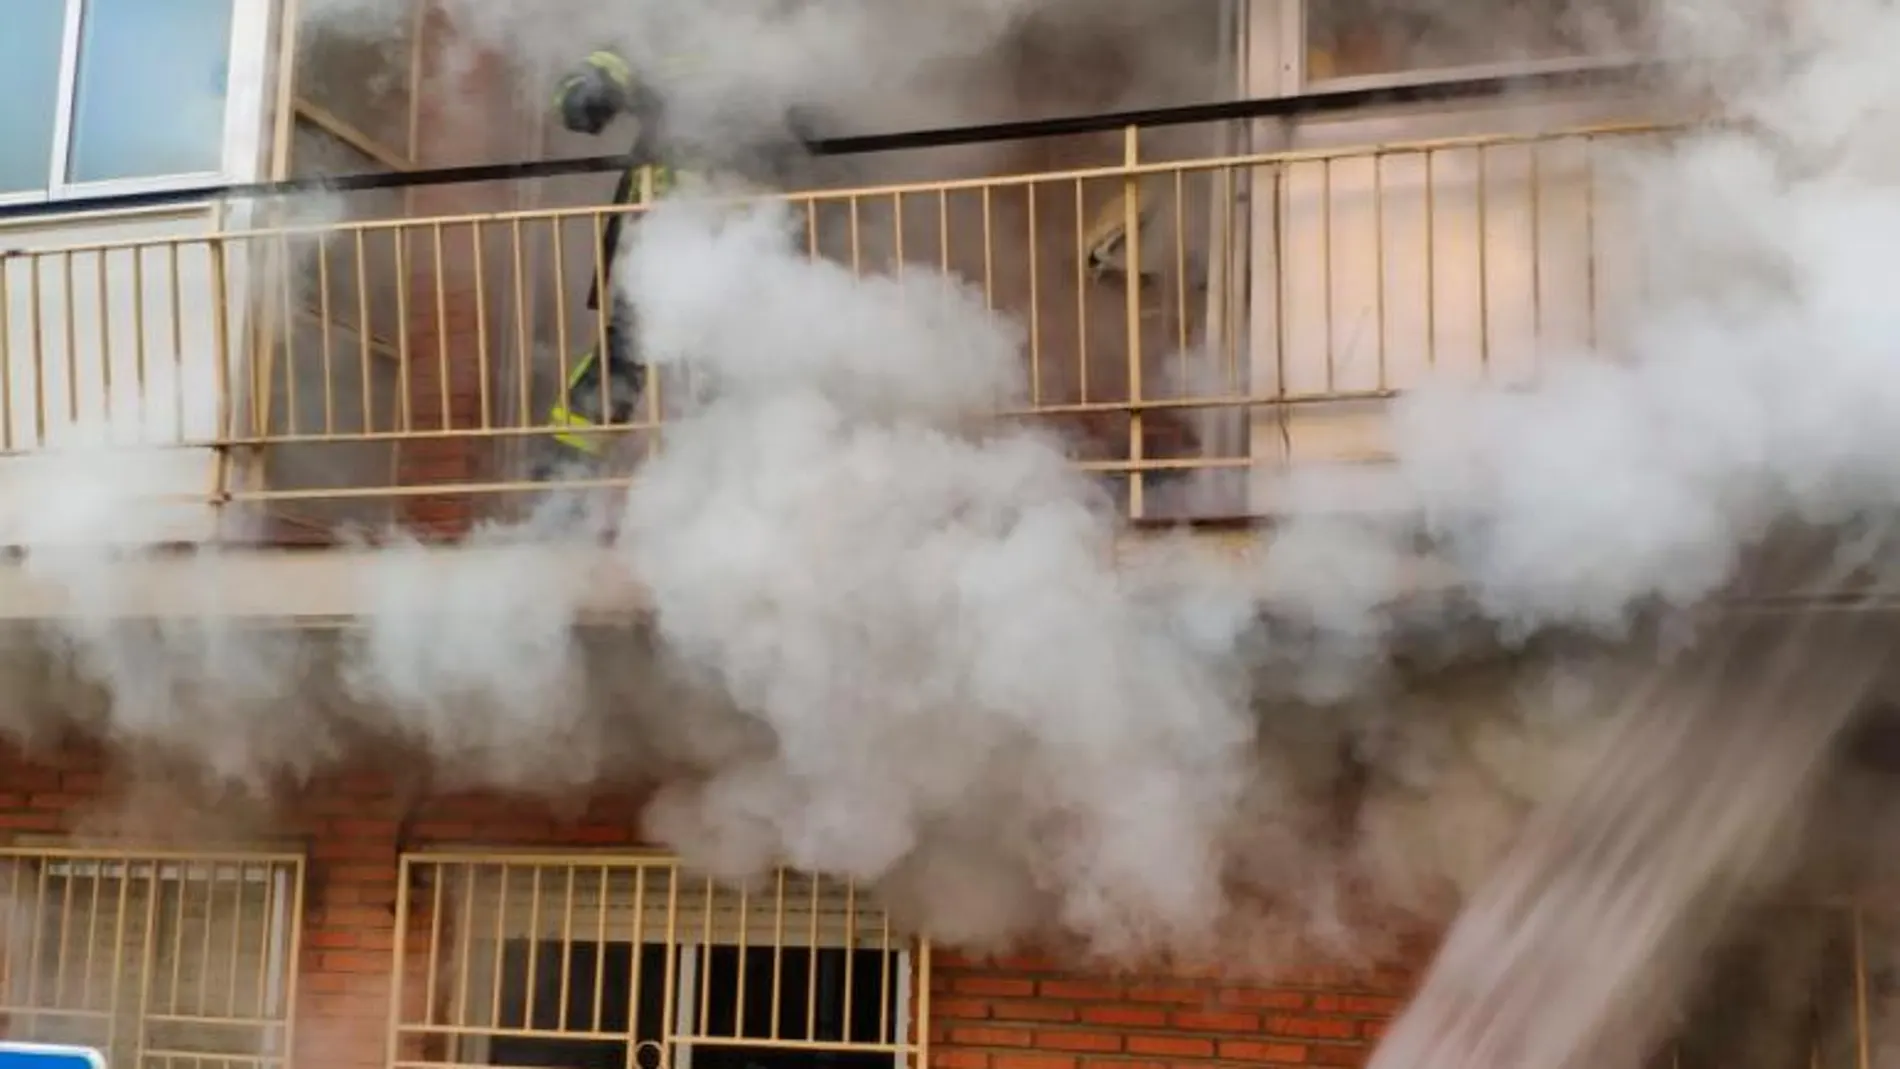 Los bomberos durante su intervención en el piso incendiado/Fotos y vídeo: Jesús Buitrago